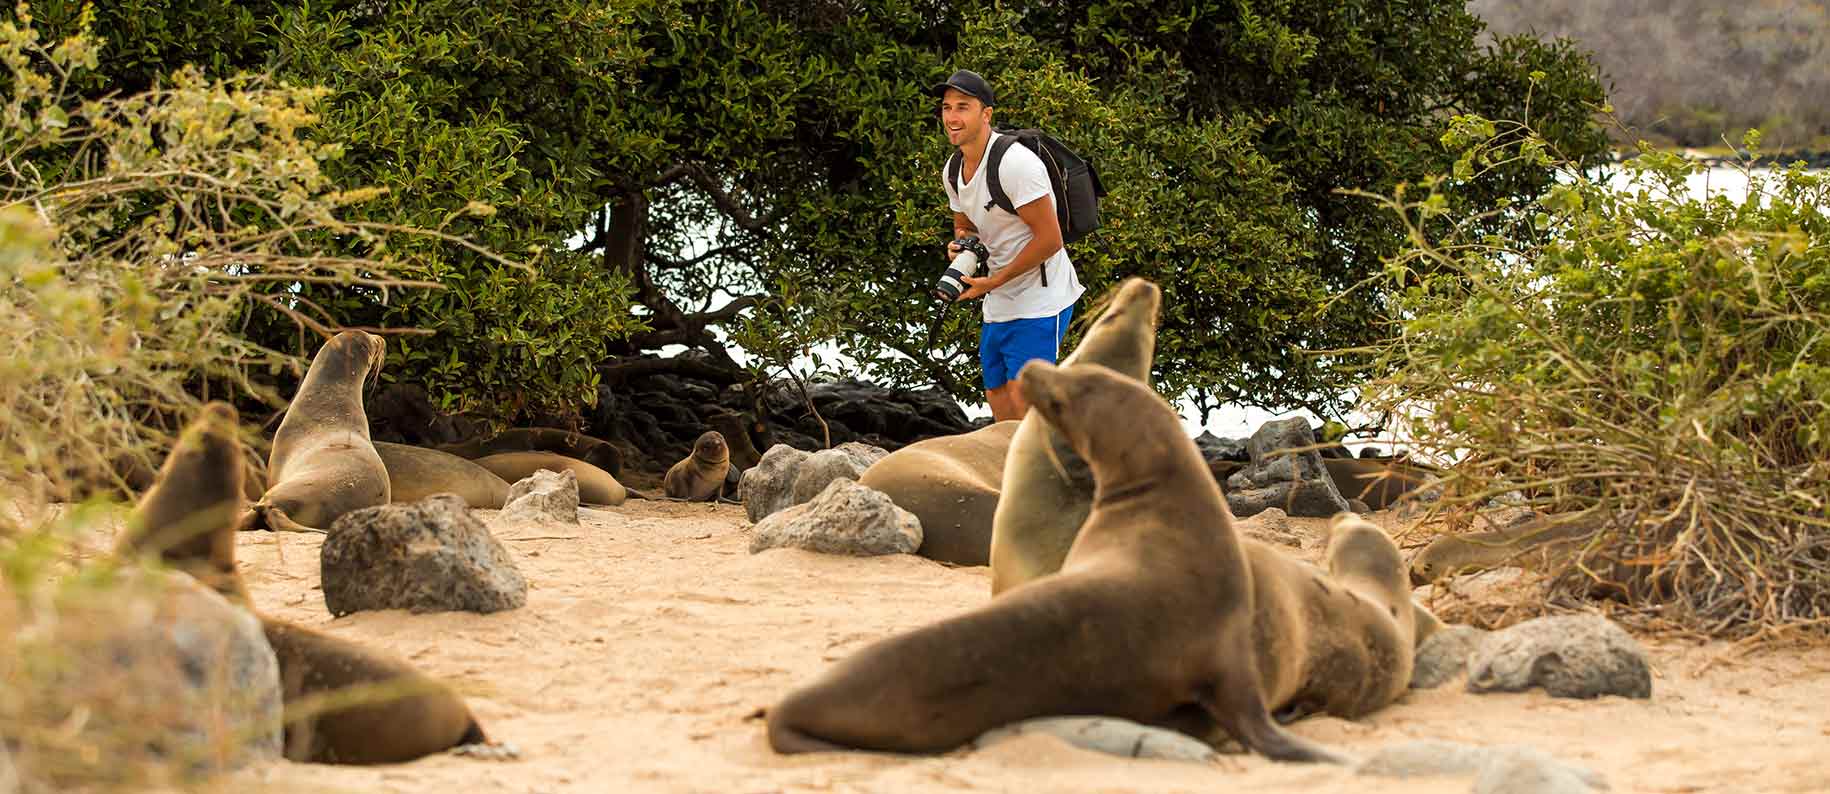 Galapagos Islands | Galapagos Tours | Galapagos Cruises 